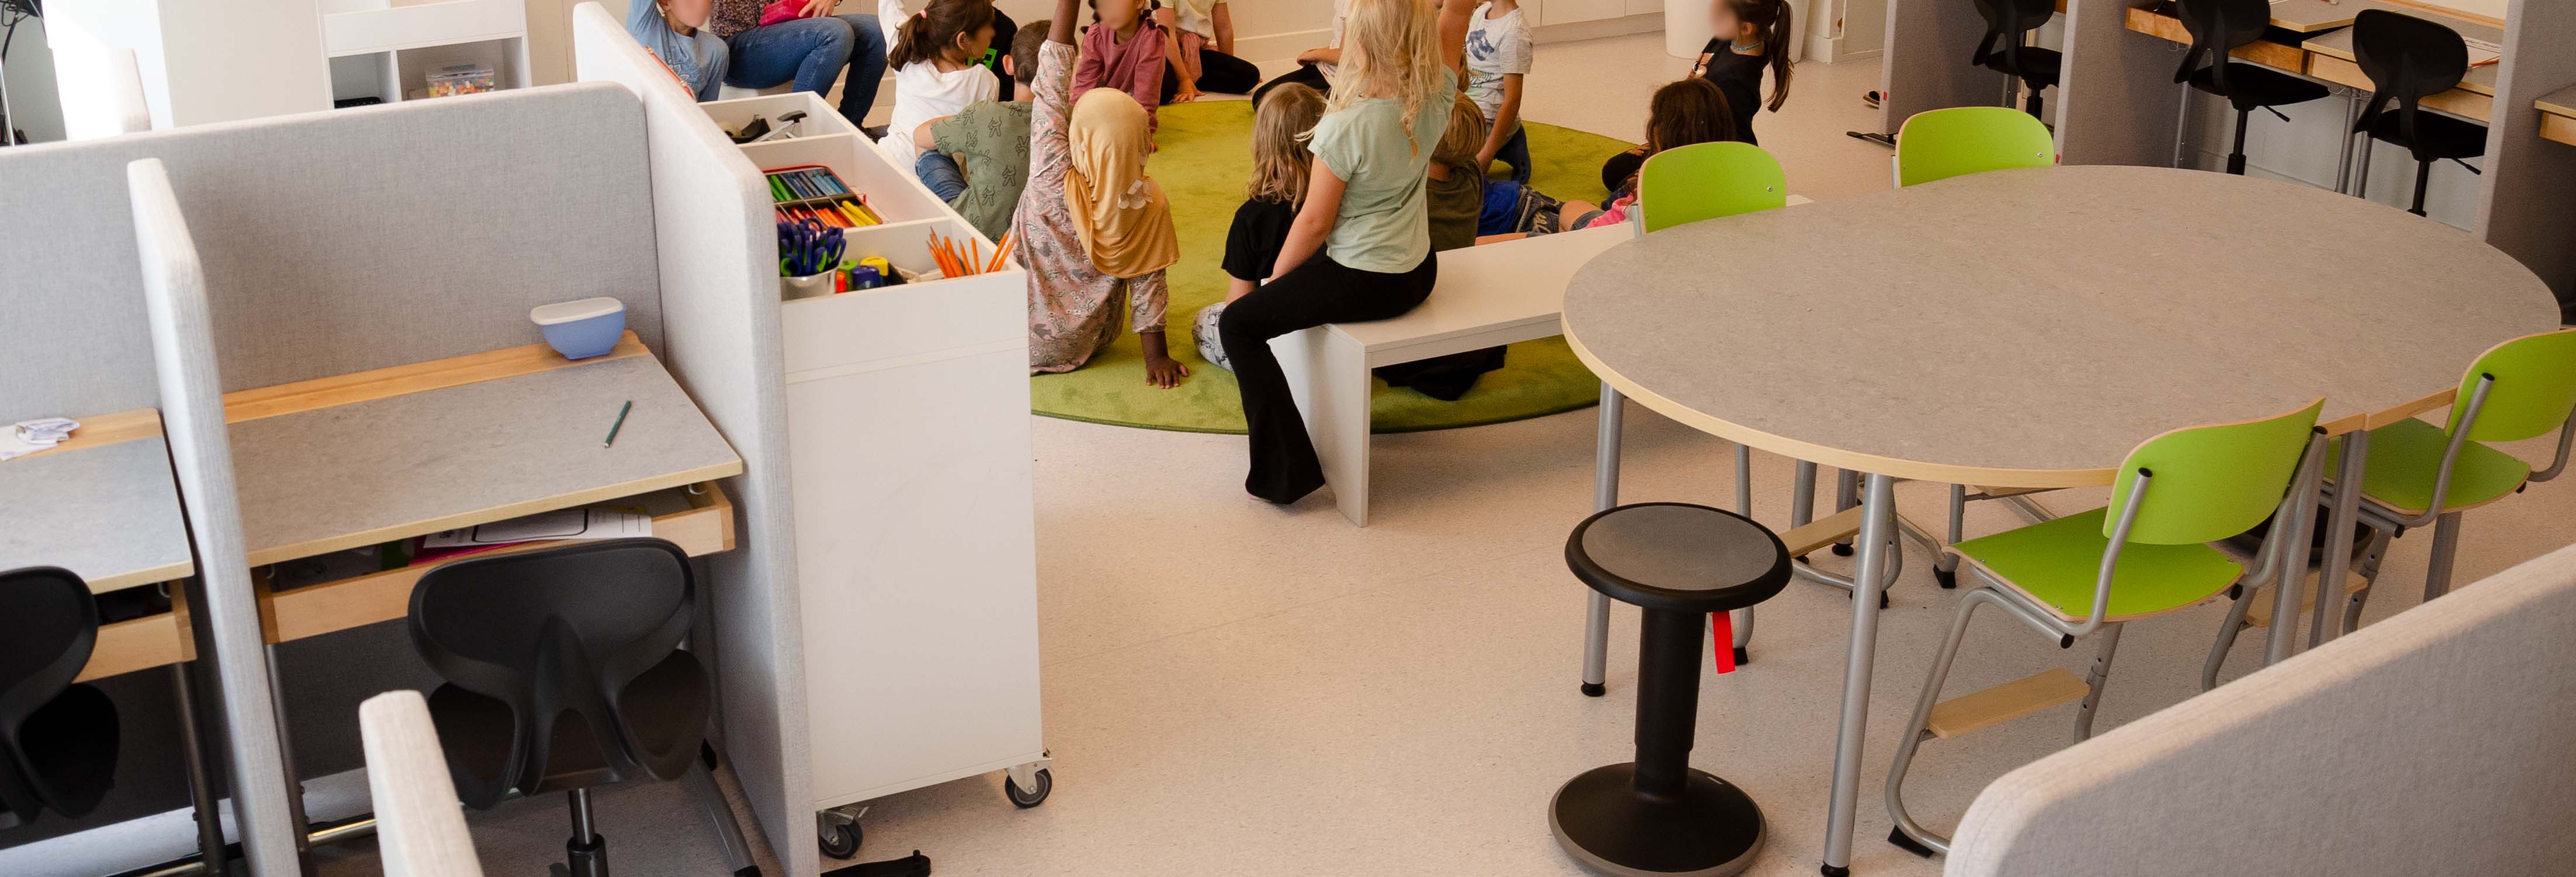 Här har barnen samling på den stora, gröna, runda mattan. Här syns också det ovala bordet i mitten av klassrummet med gröna stolar och en balanspall.